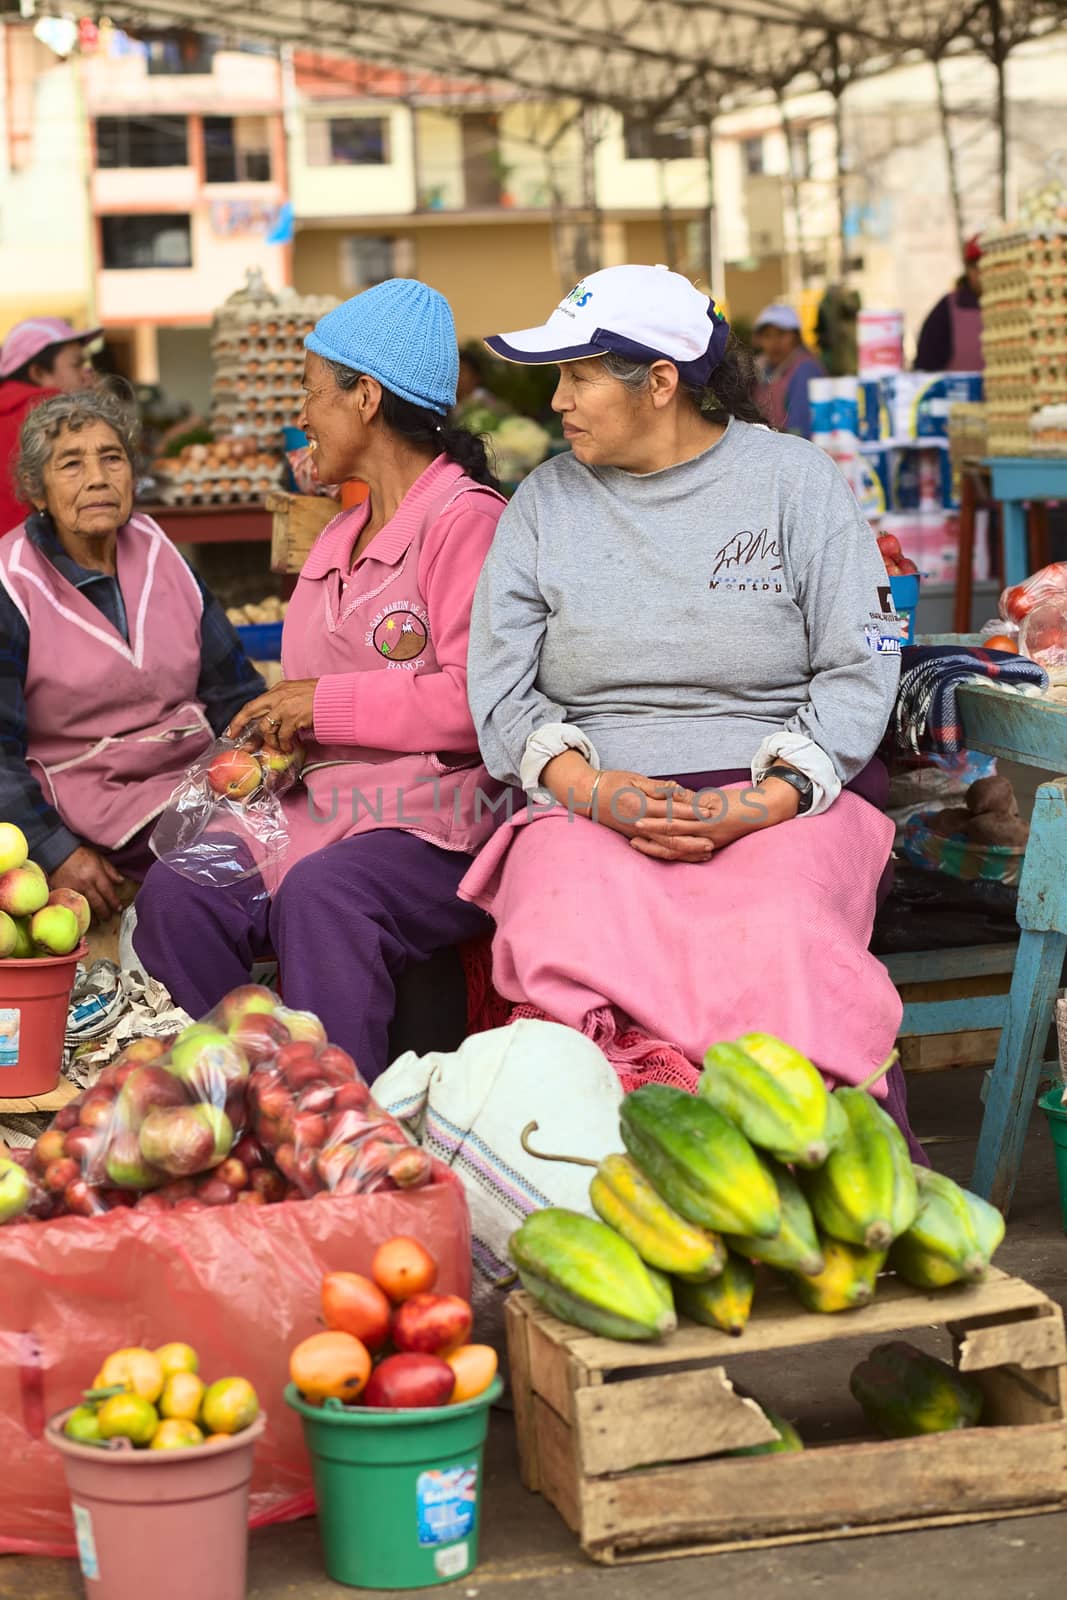 Market in Banos, Ecuador by ildi